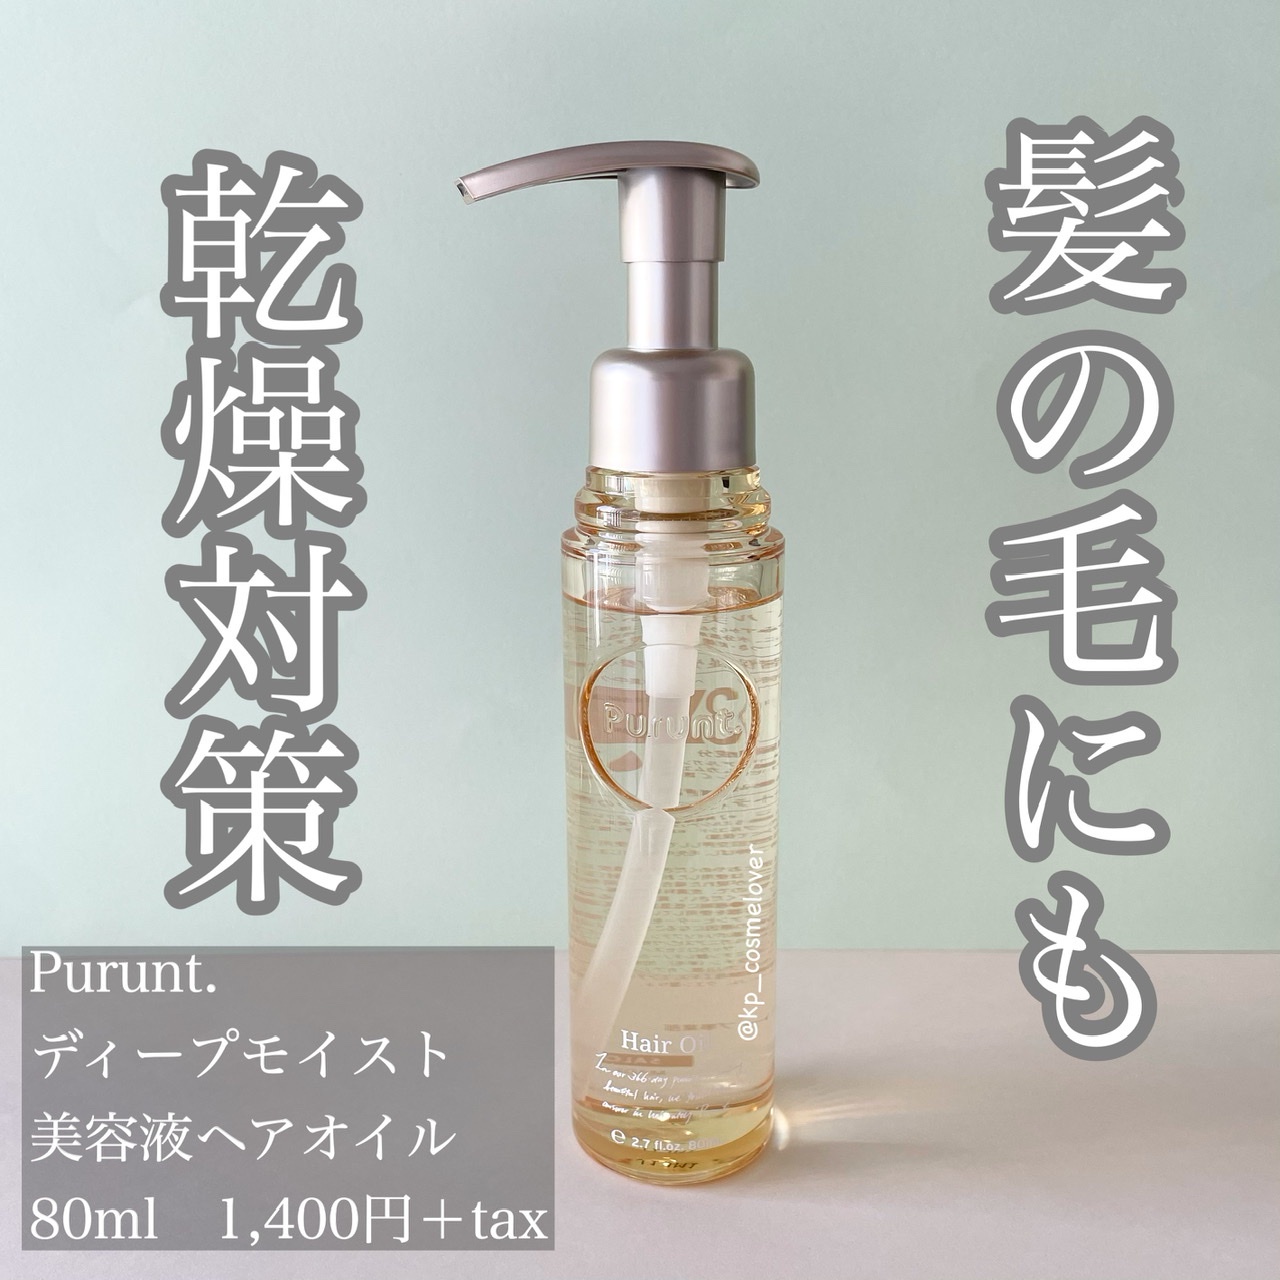 Purunt ディープモイスト美容液ヘアオイル 80ml - カラーリング剤